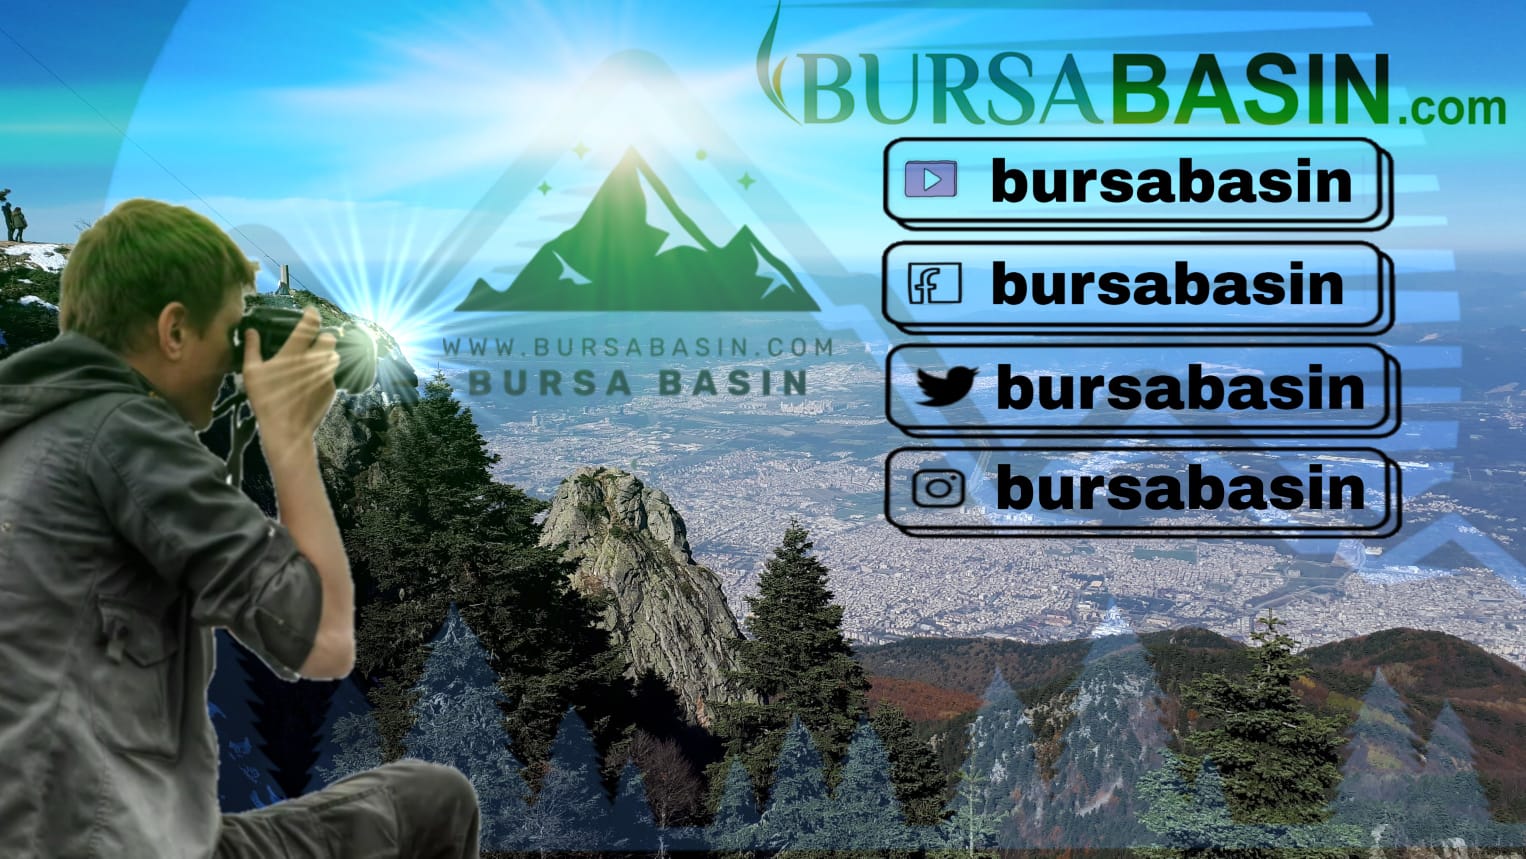 bursa-basin-logo-2